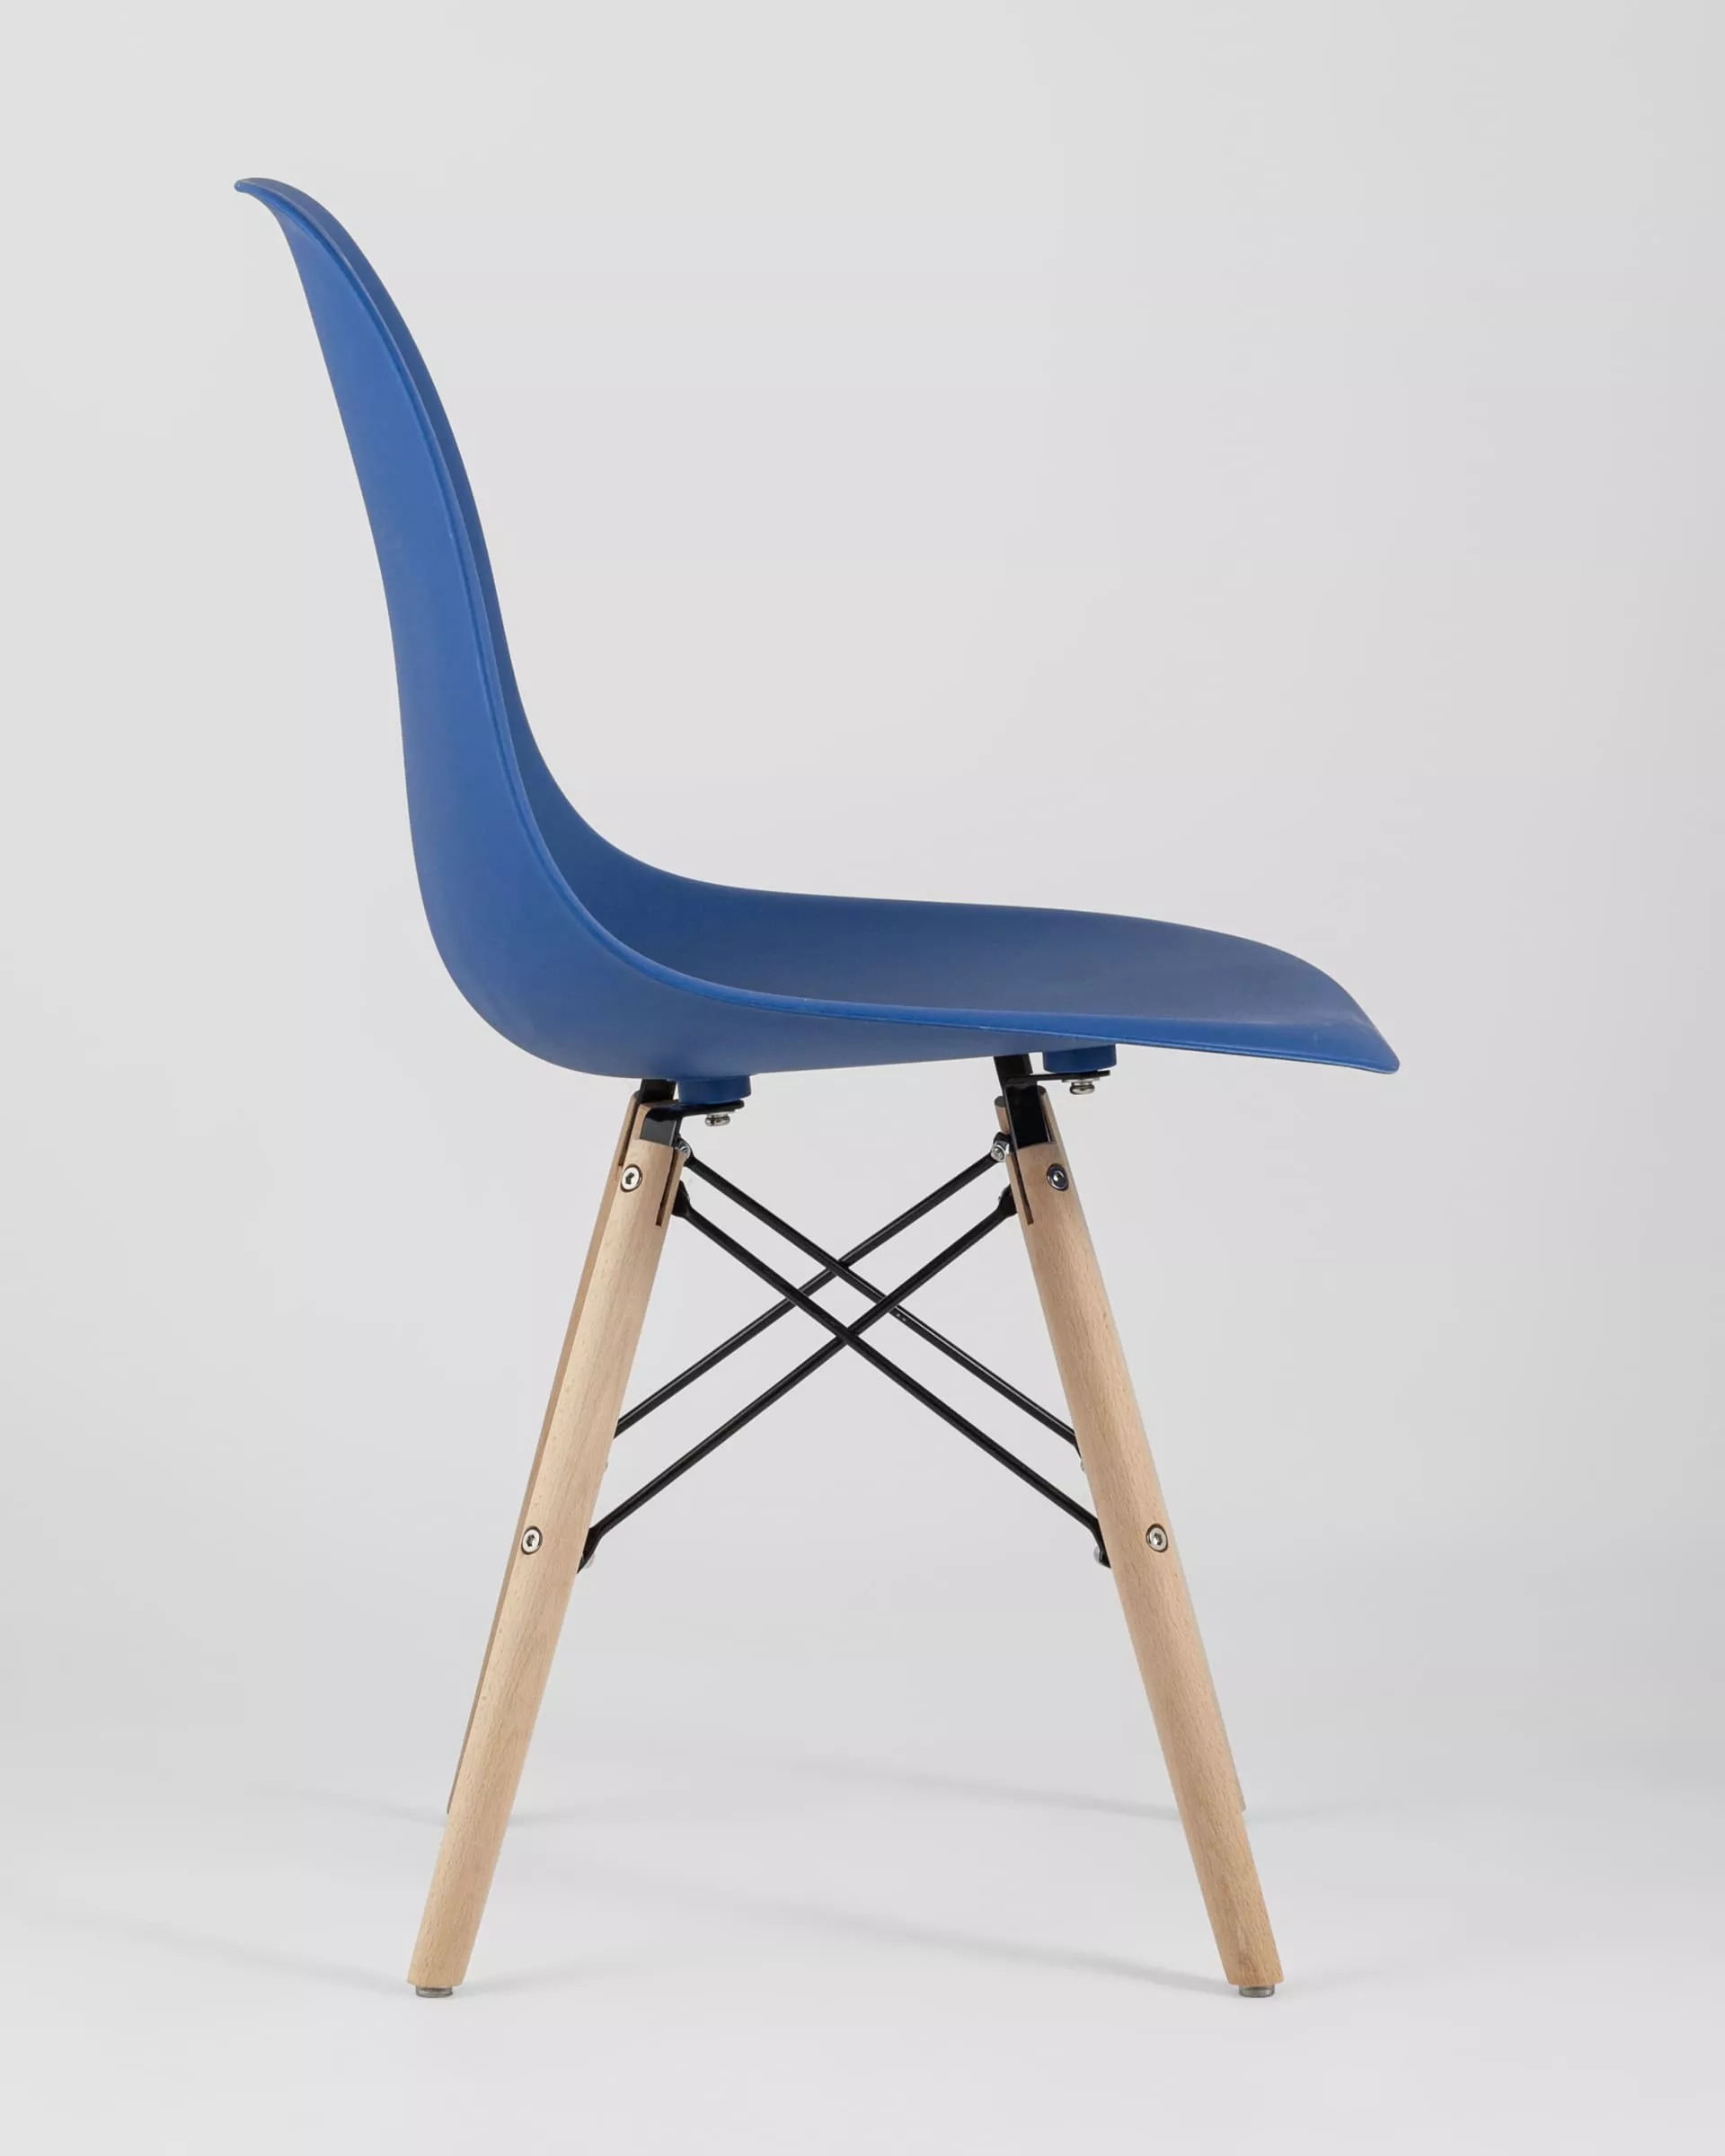 Комплект стульев Eames Style DSW синий x4 шт